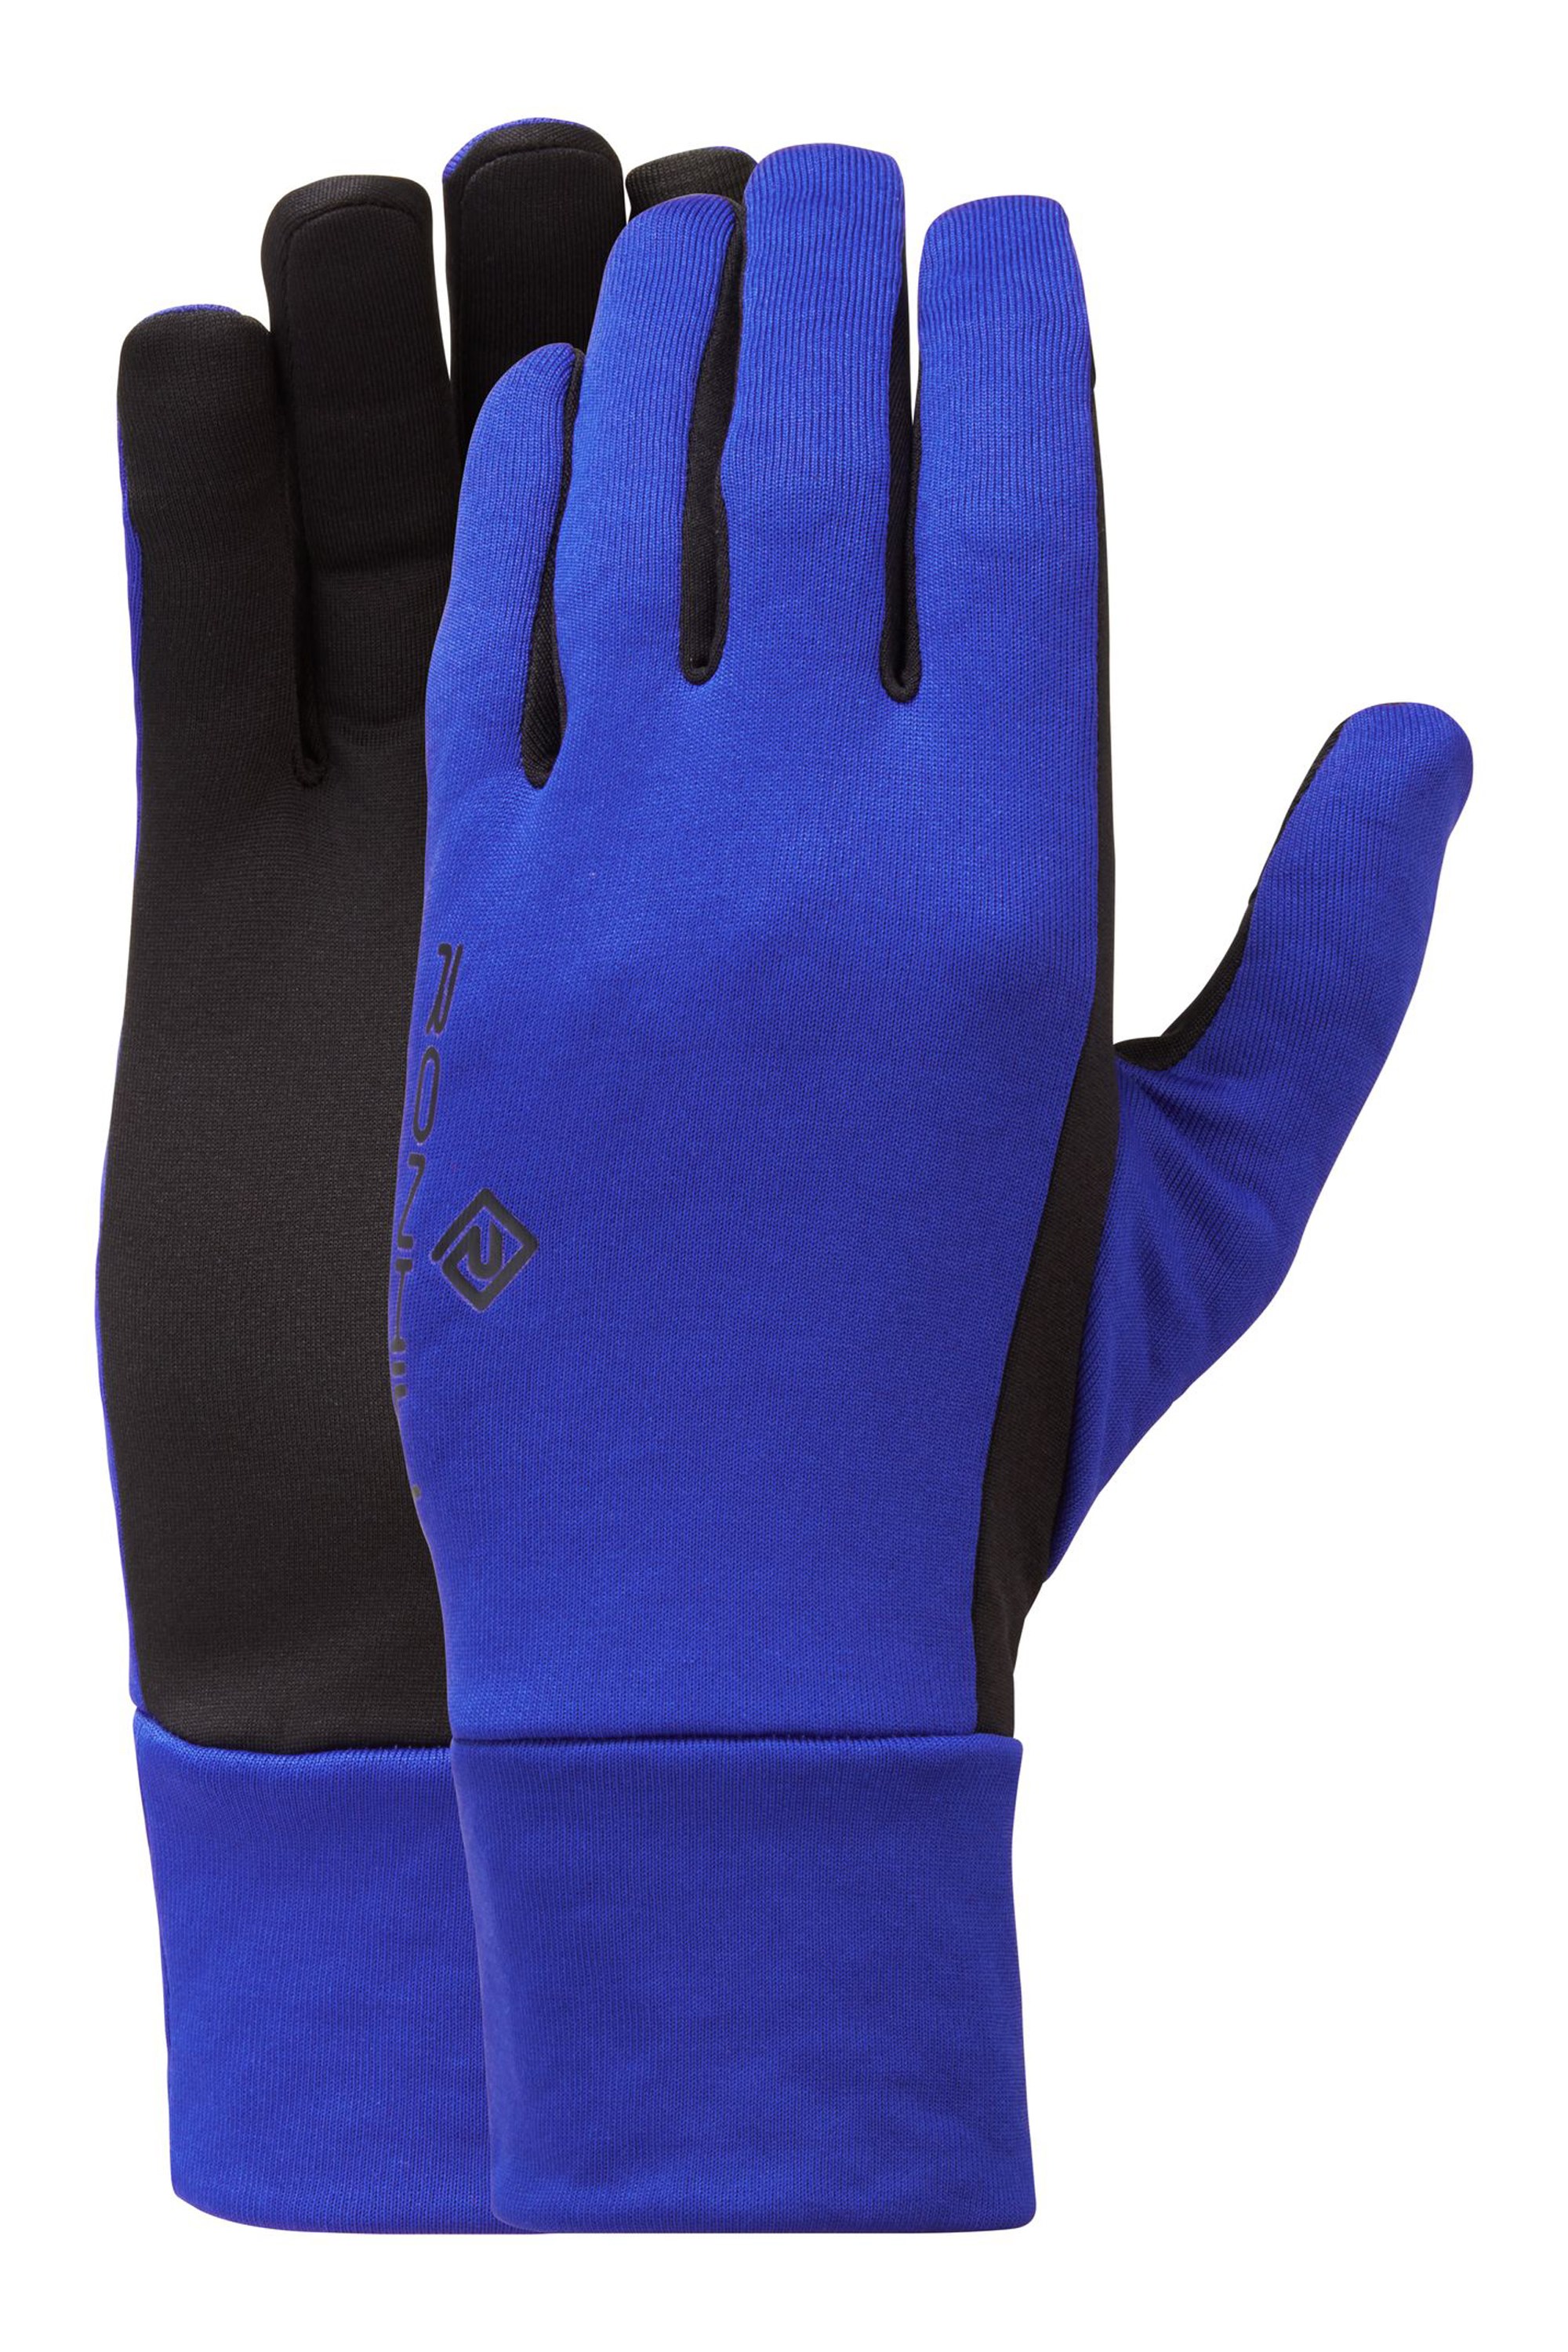 Prism Glove - Blue